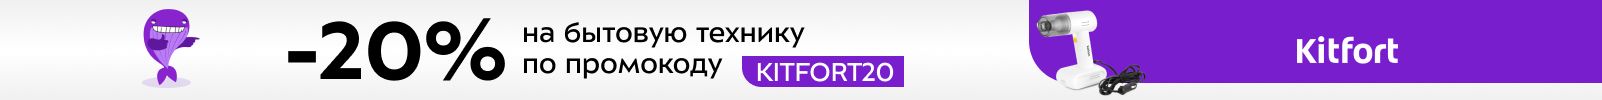 C 20%     Kitfort